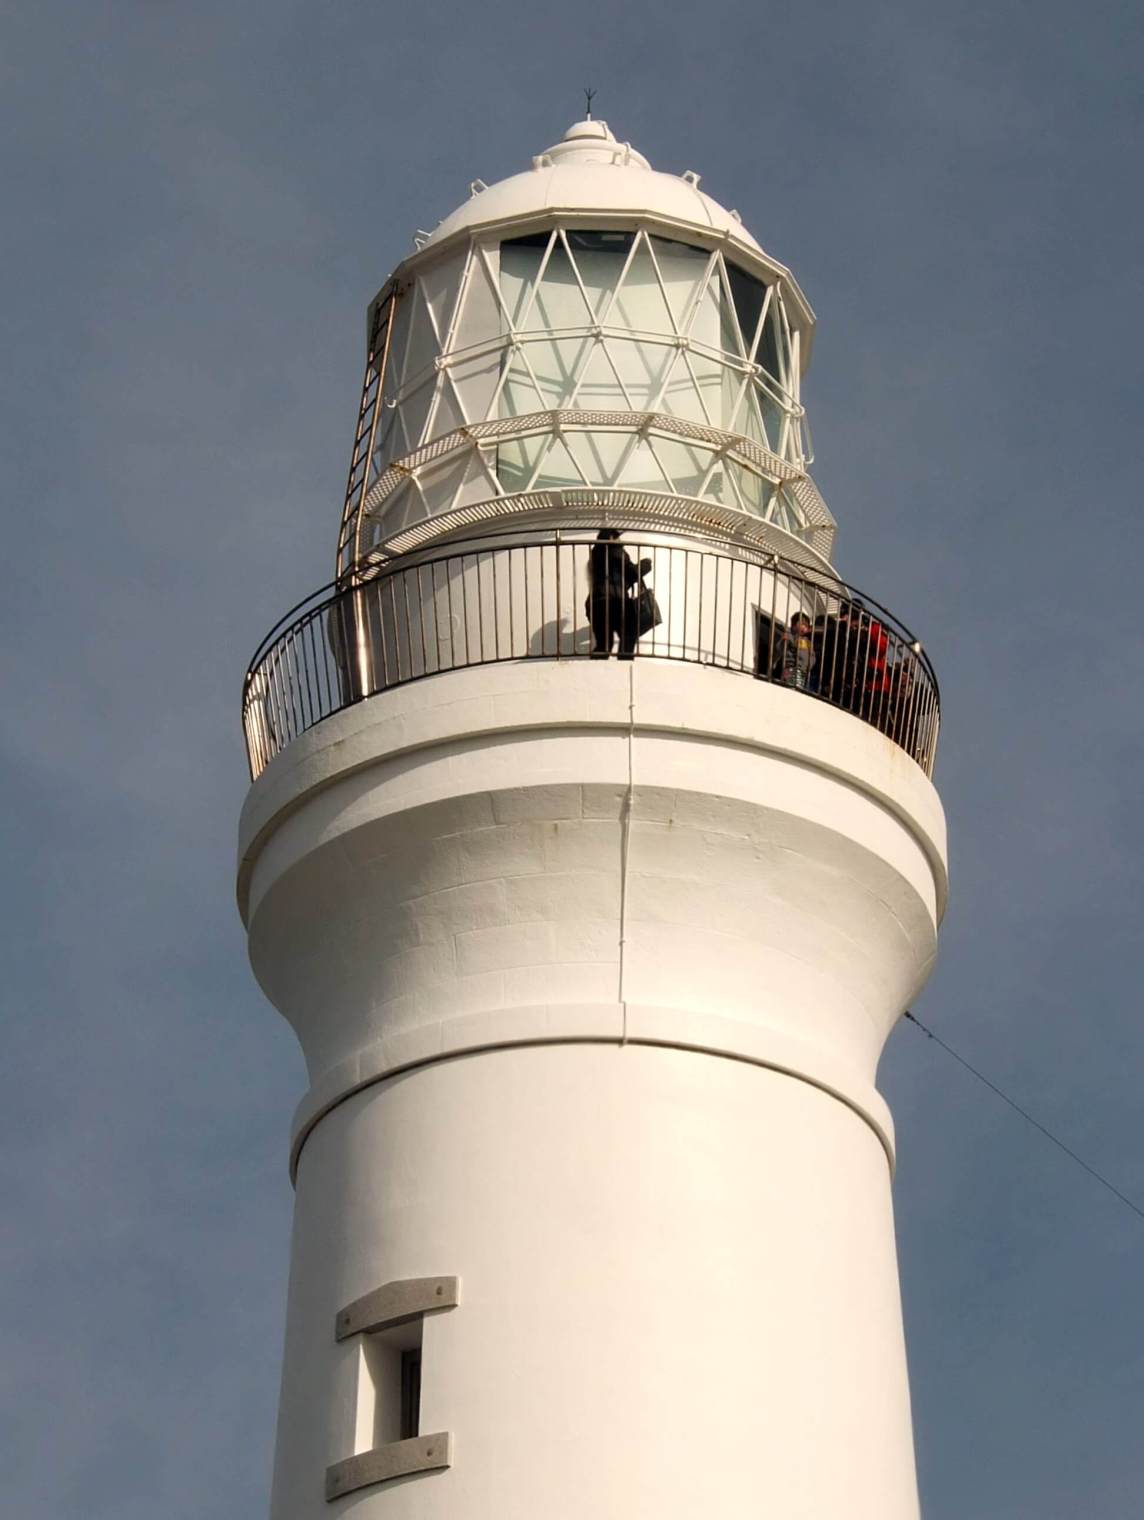 Inubosaki Lighthouse